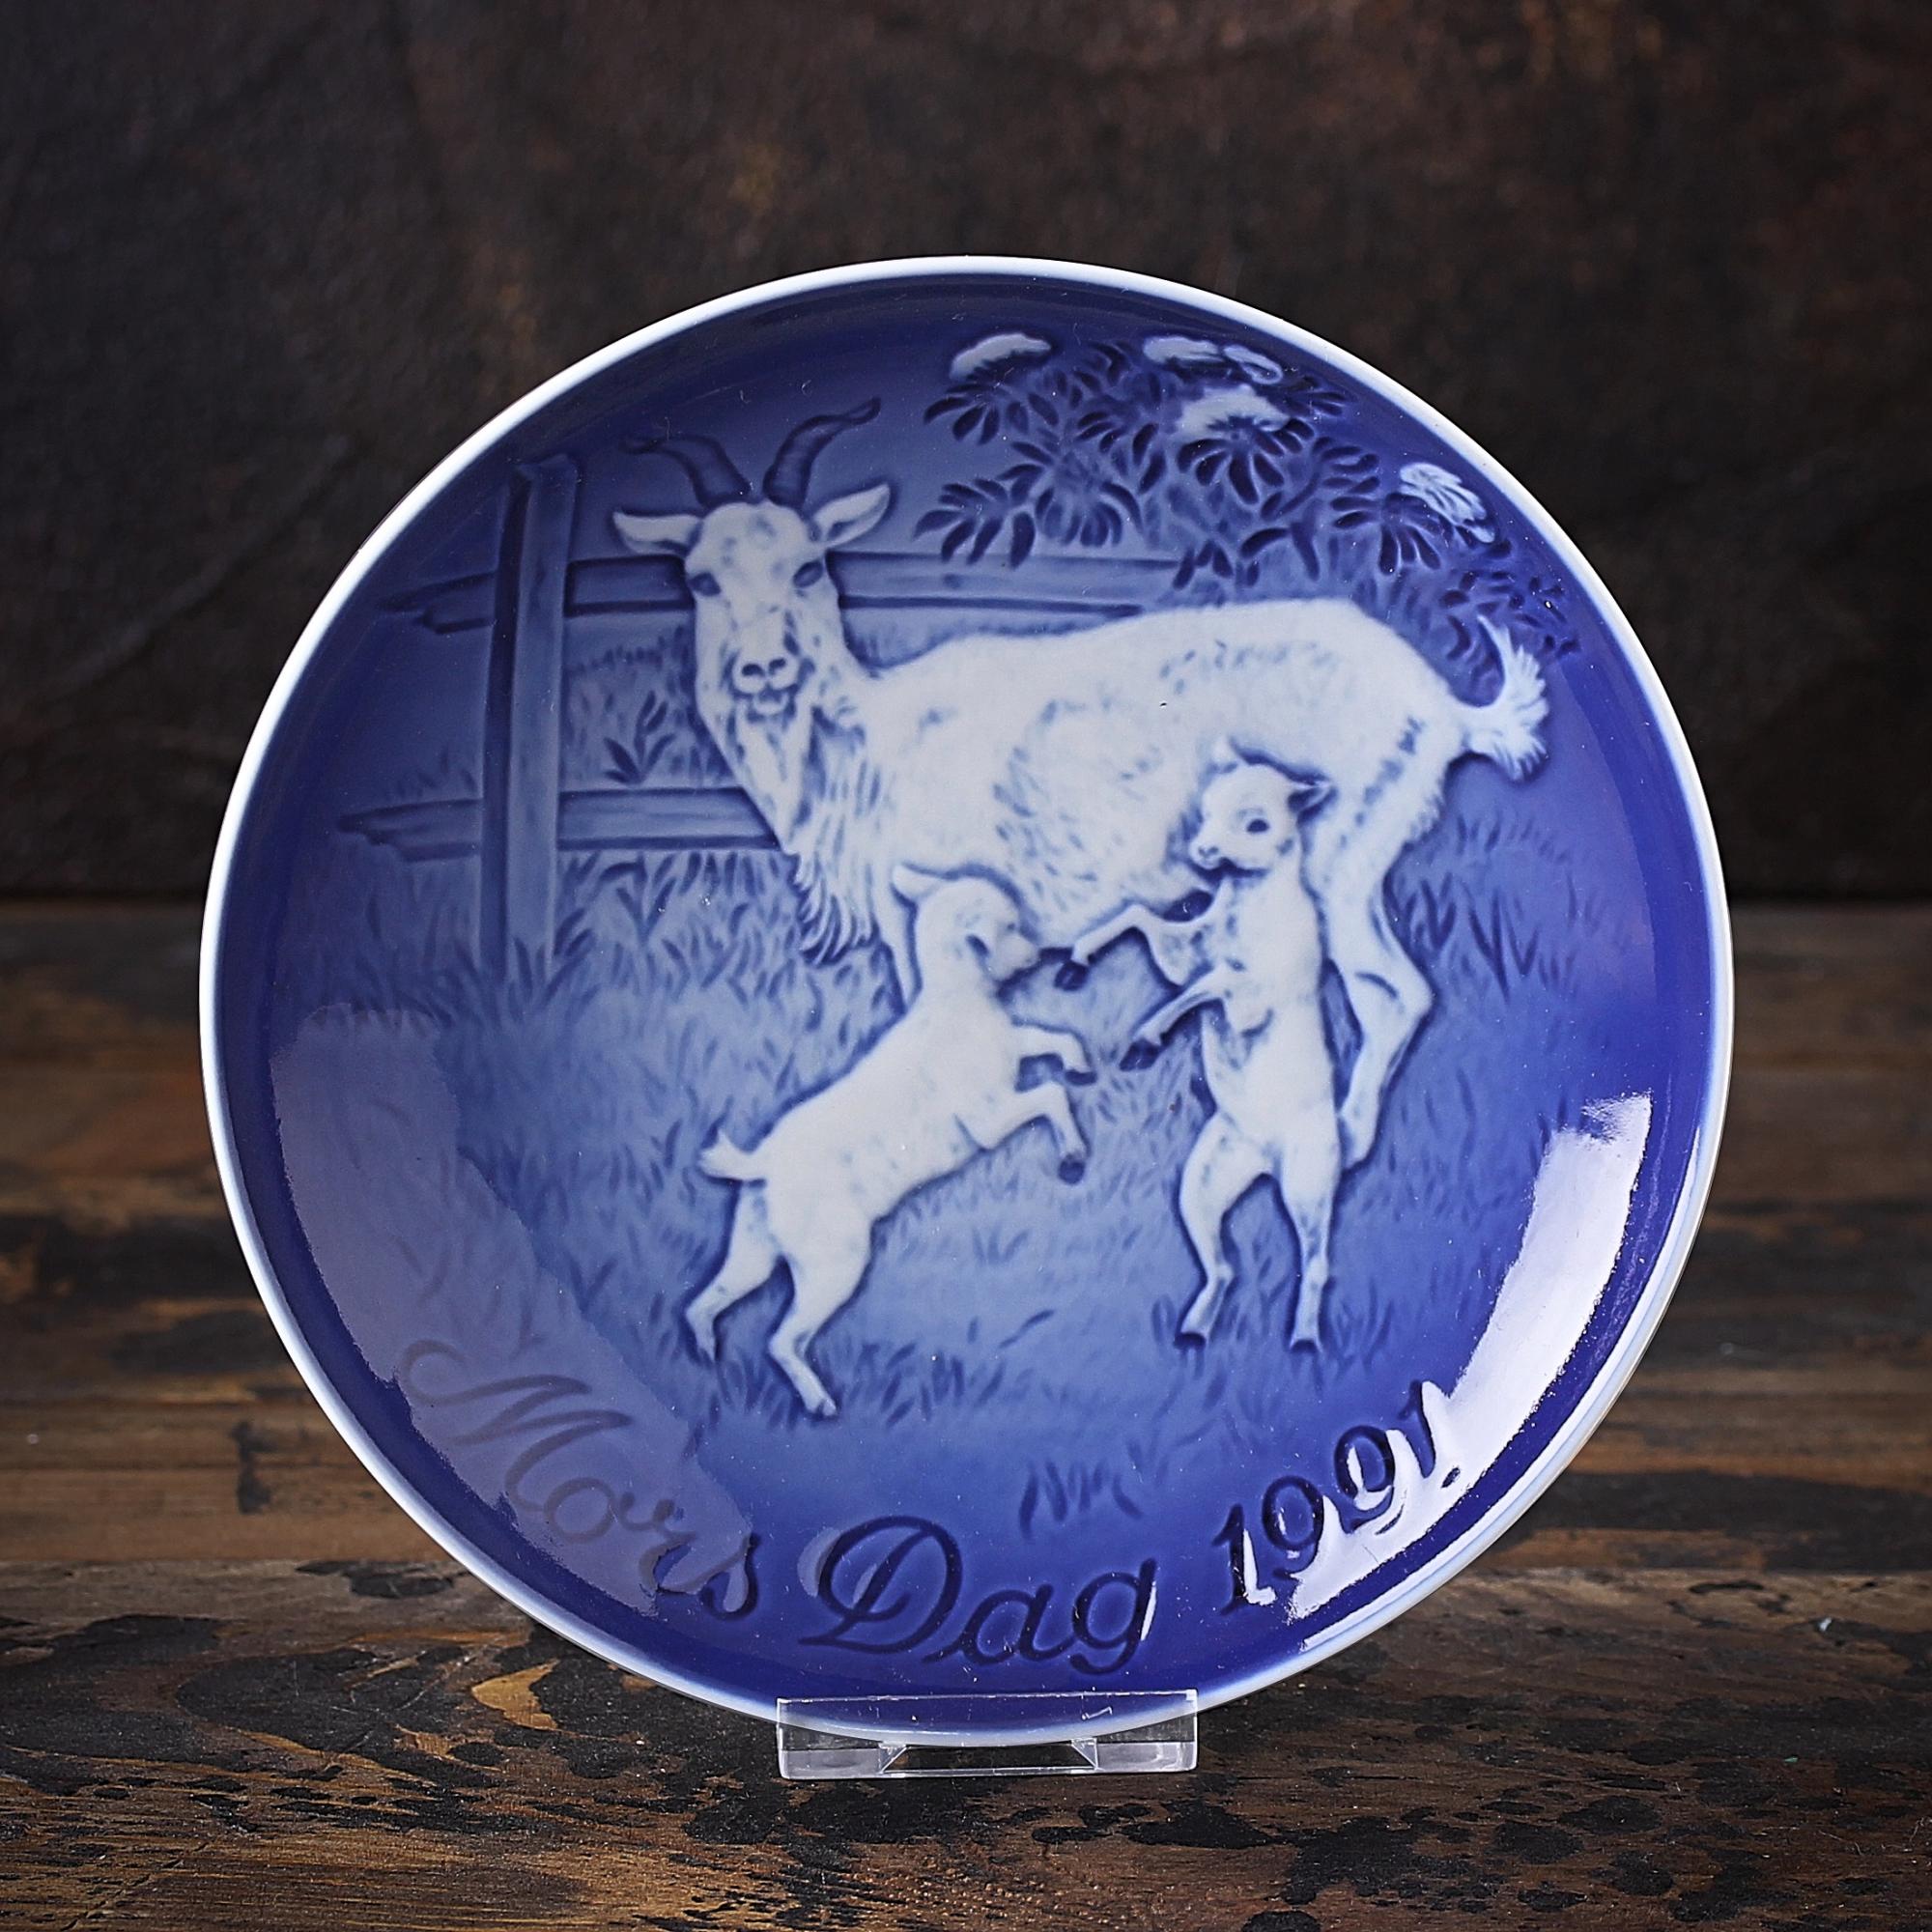 Винтажная декоративная тарелка Bing & Grondahl "Mors Dag 1991" День матери / Коза с козлятами